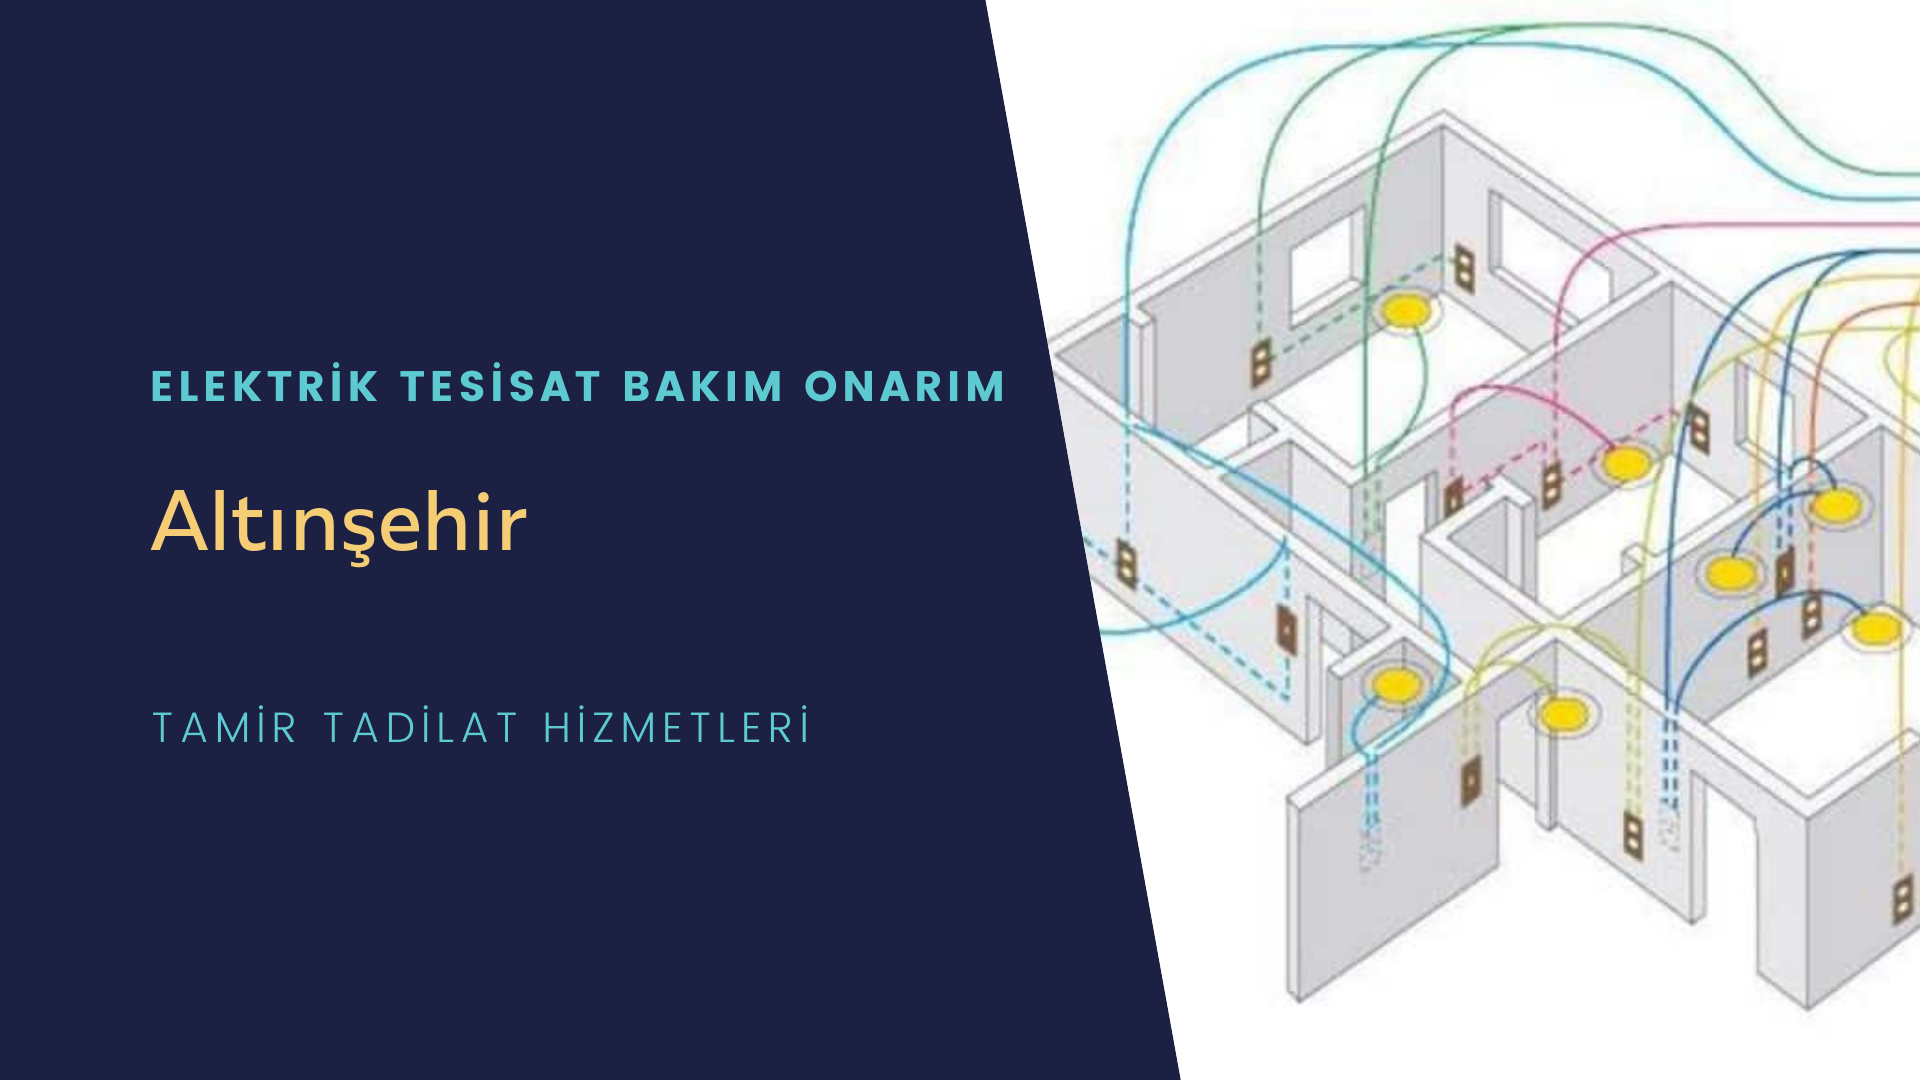 Altınşehir'de elektrik tesisatı ustalarımı arıyorsunuz doğru adrestenizi Altınşehir elektrik tesisatı ustalarımız 7/24 sizlere hizmet vermekten mutluluk duyar.